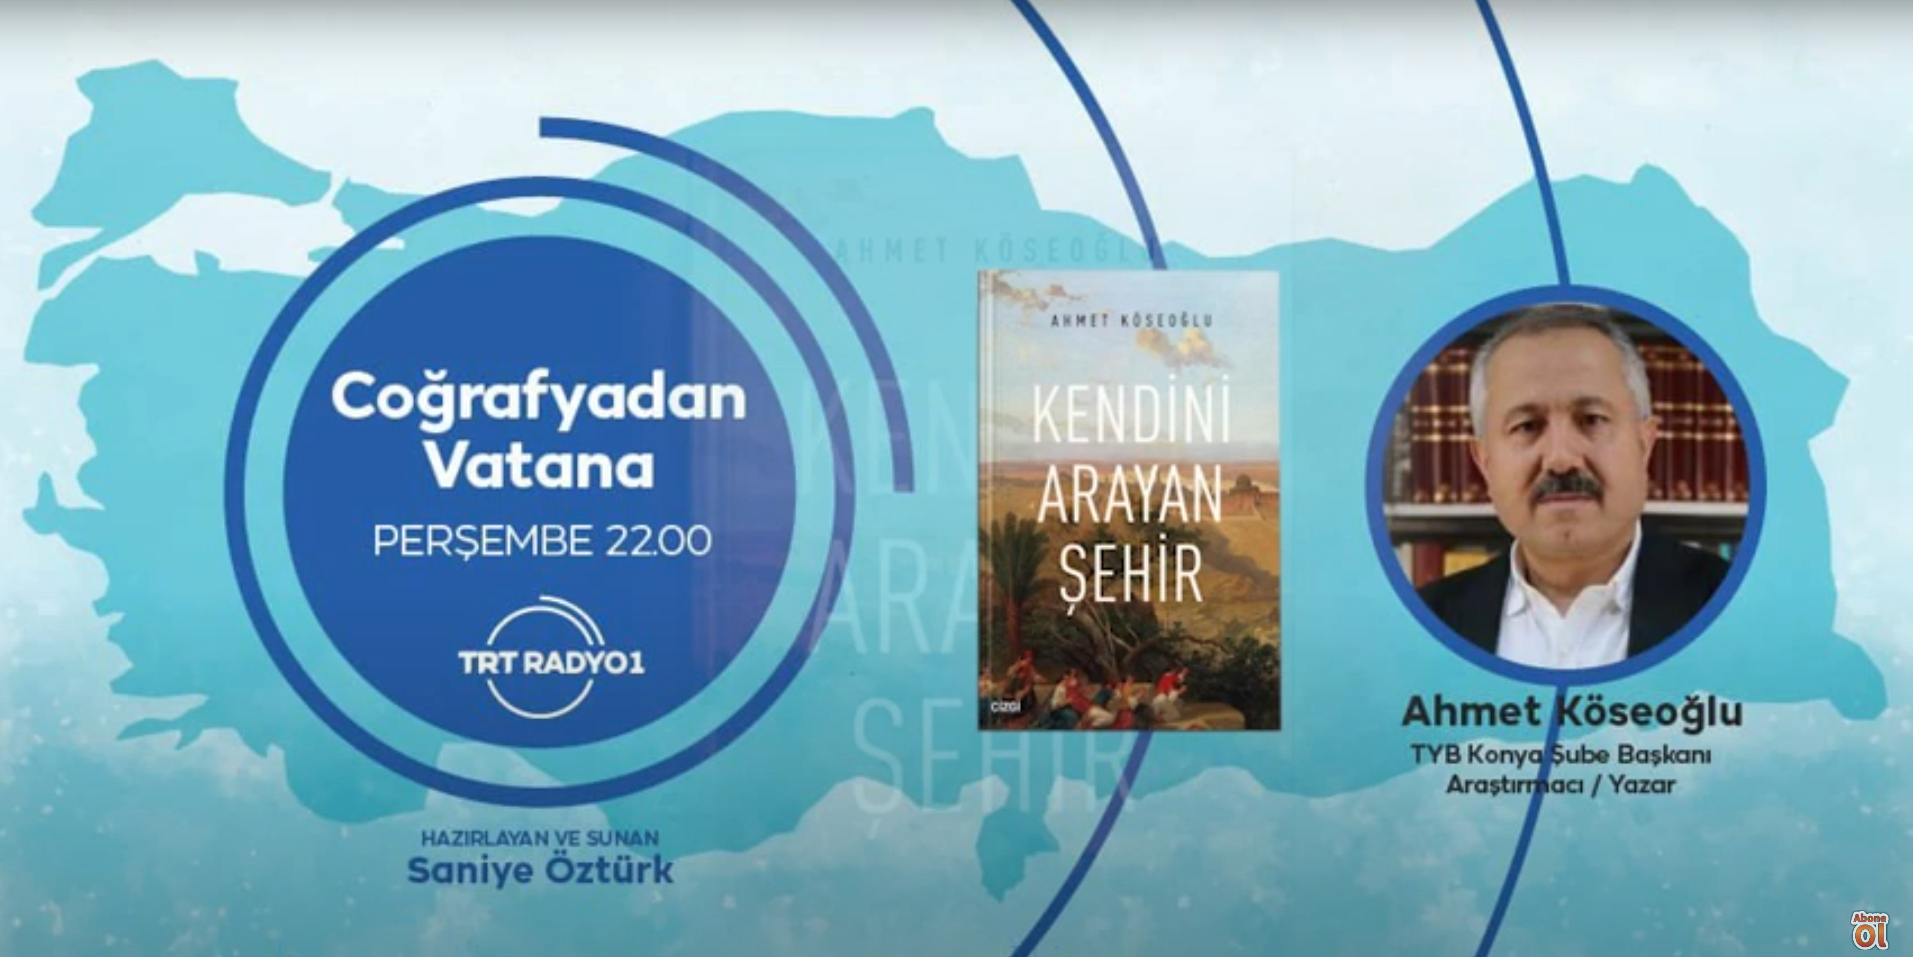 Ahmet Köseoğlu'nun TRT Radyo'da Coğrafyadan Vatana programı konuşması